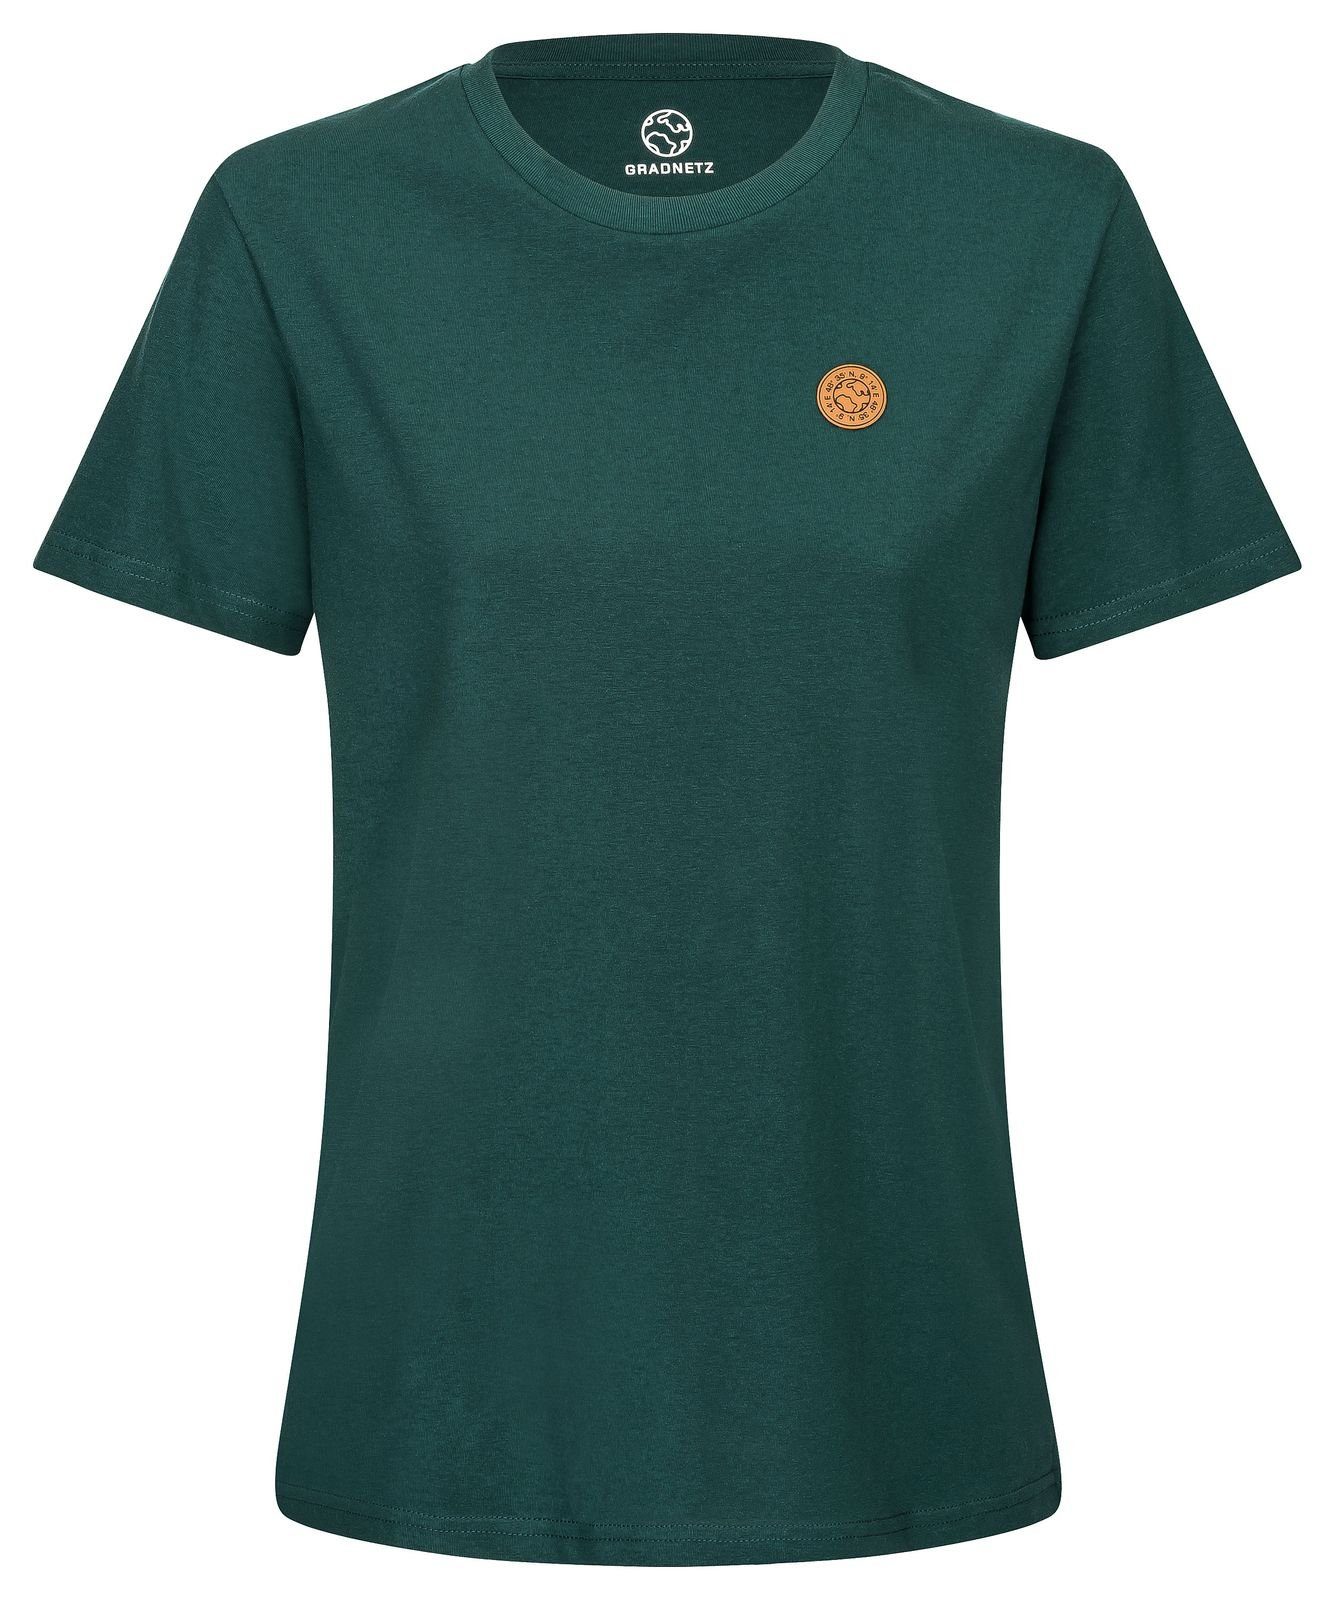 Gradnetz T-Shirt basic leather & dunkelgrün fair 100% nachhaltig unisex Biobaumwolle